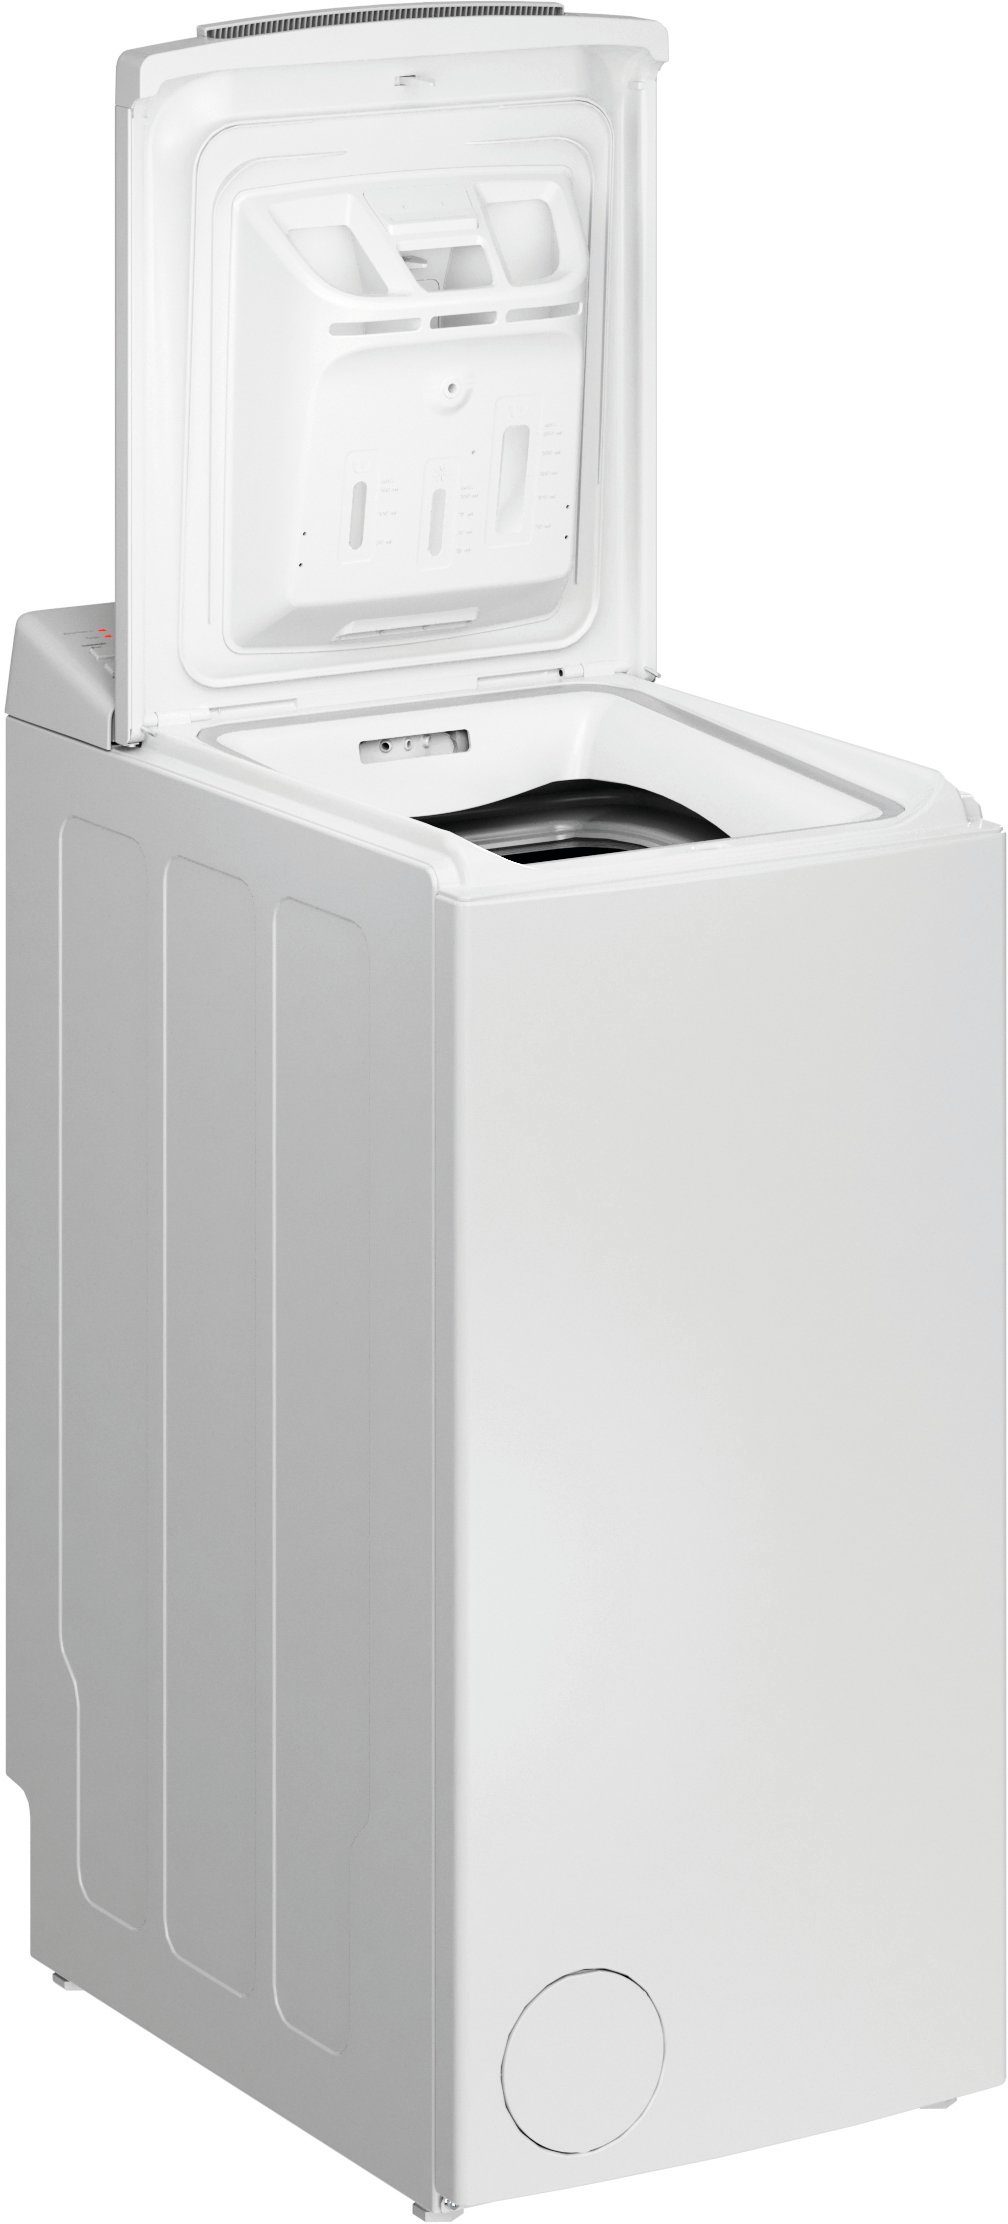 BAUKNECHT Waschmaschine Toplader WMT Eco Star 6524 Di N, 6,5 kg, 1200 U/min